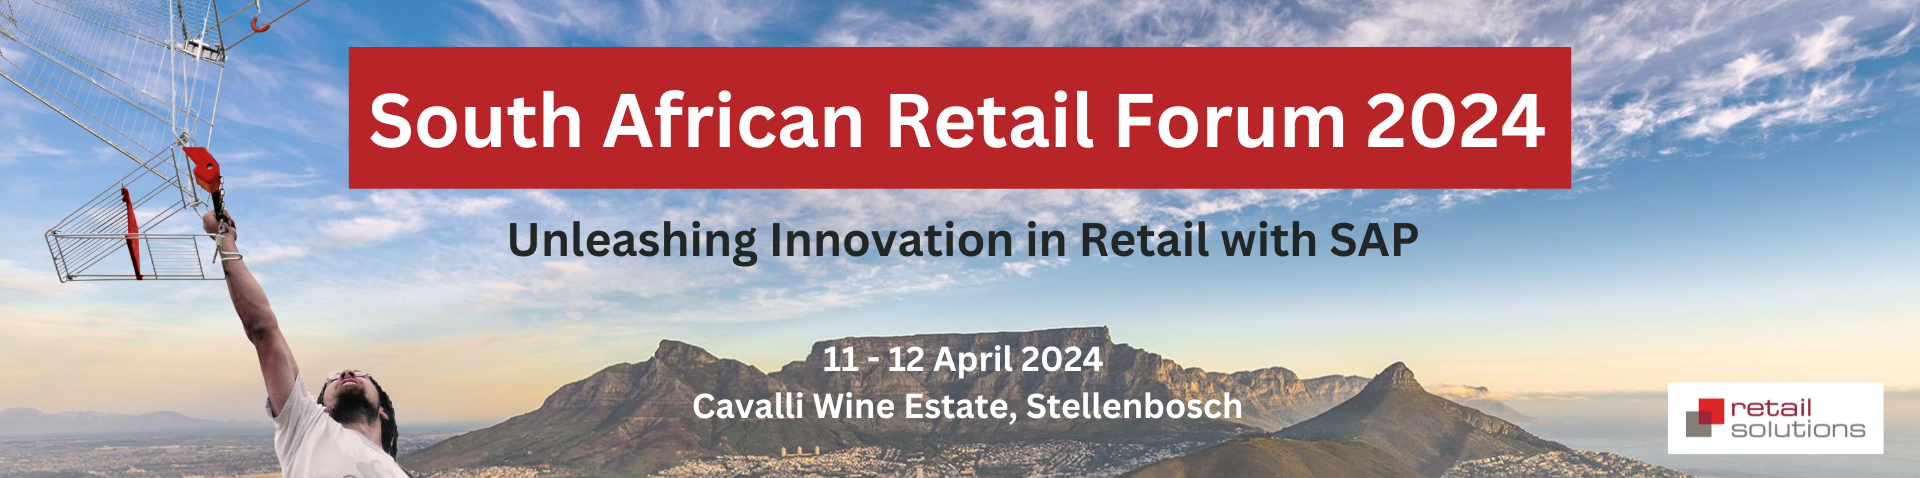 Start_Slider_Retail_Forum_South_Africa